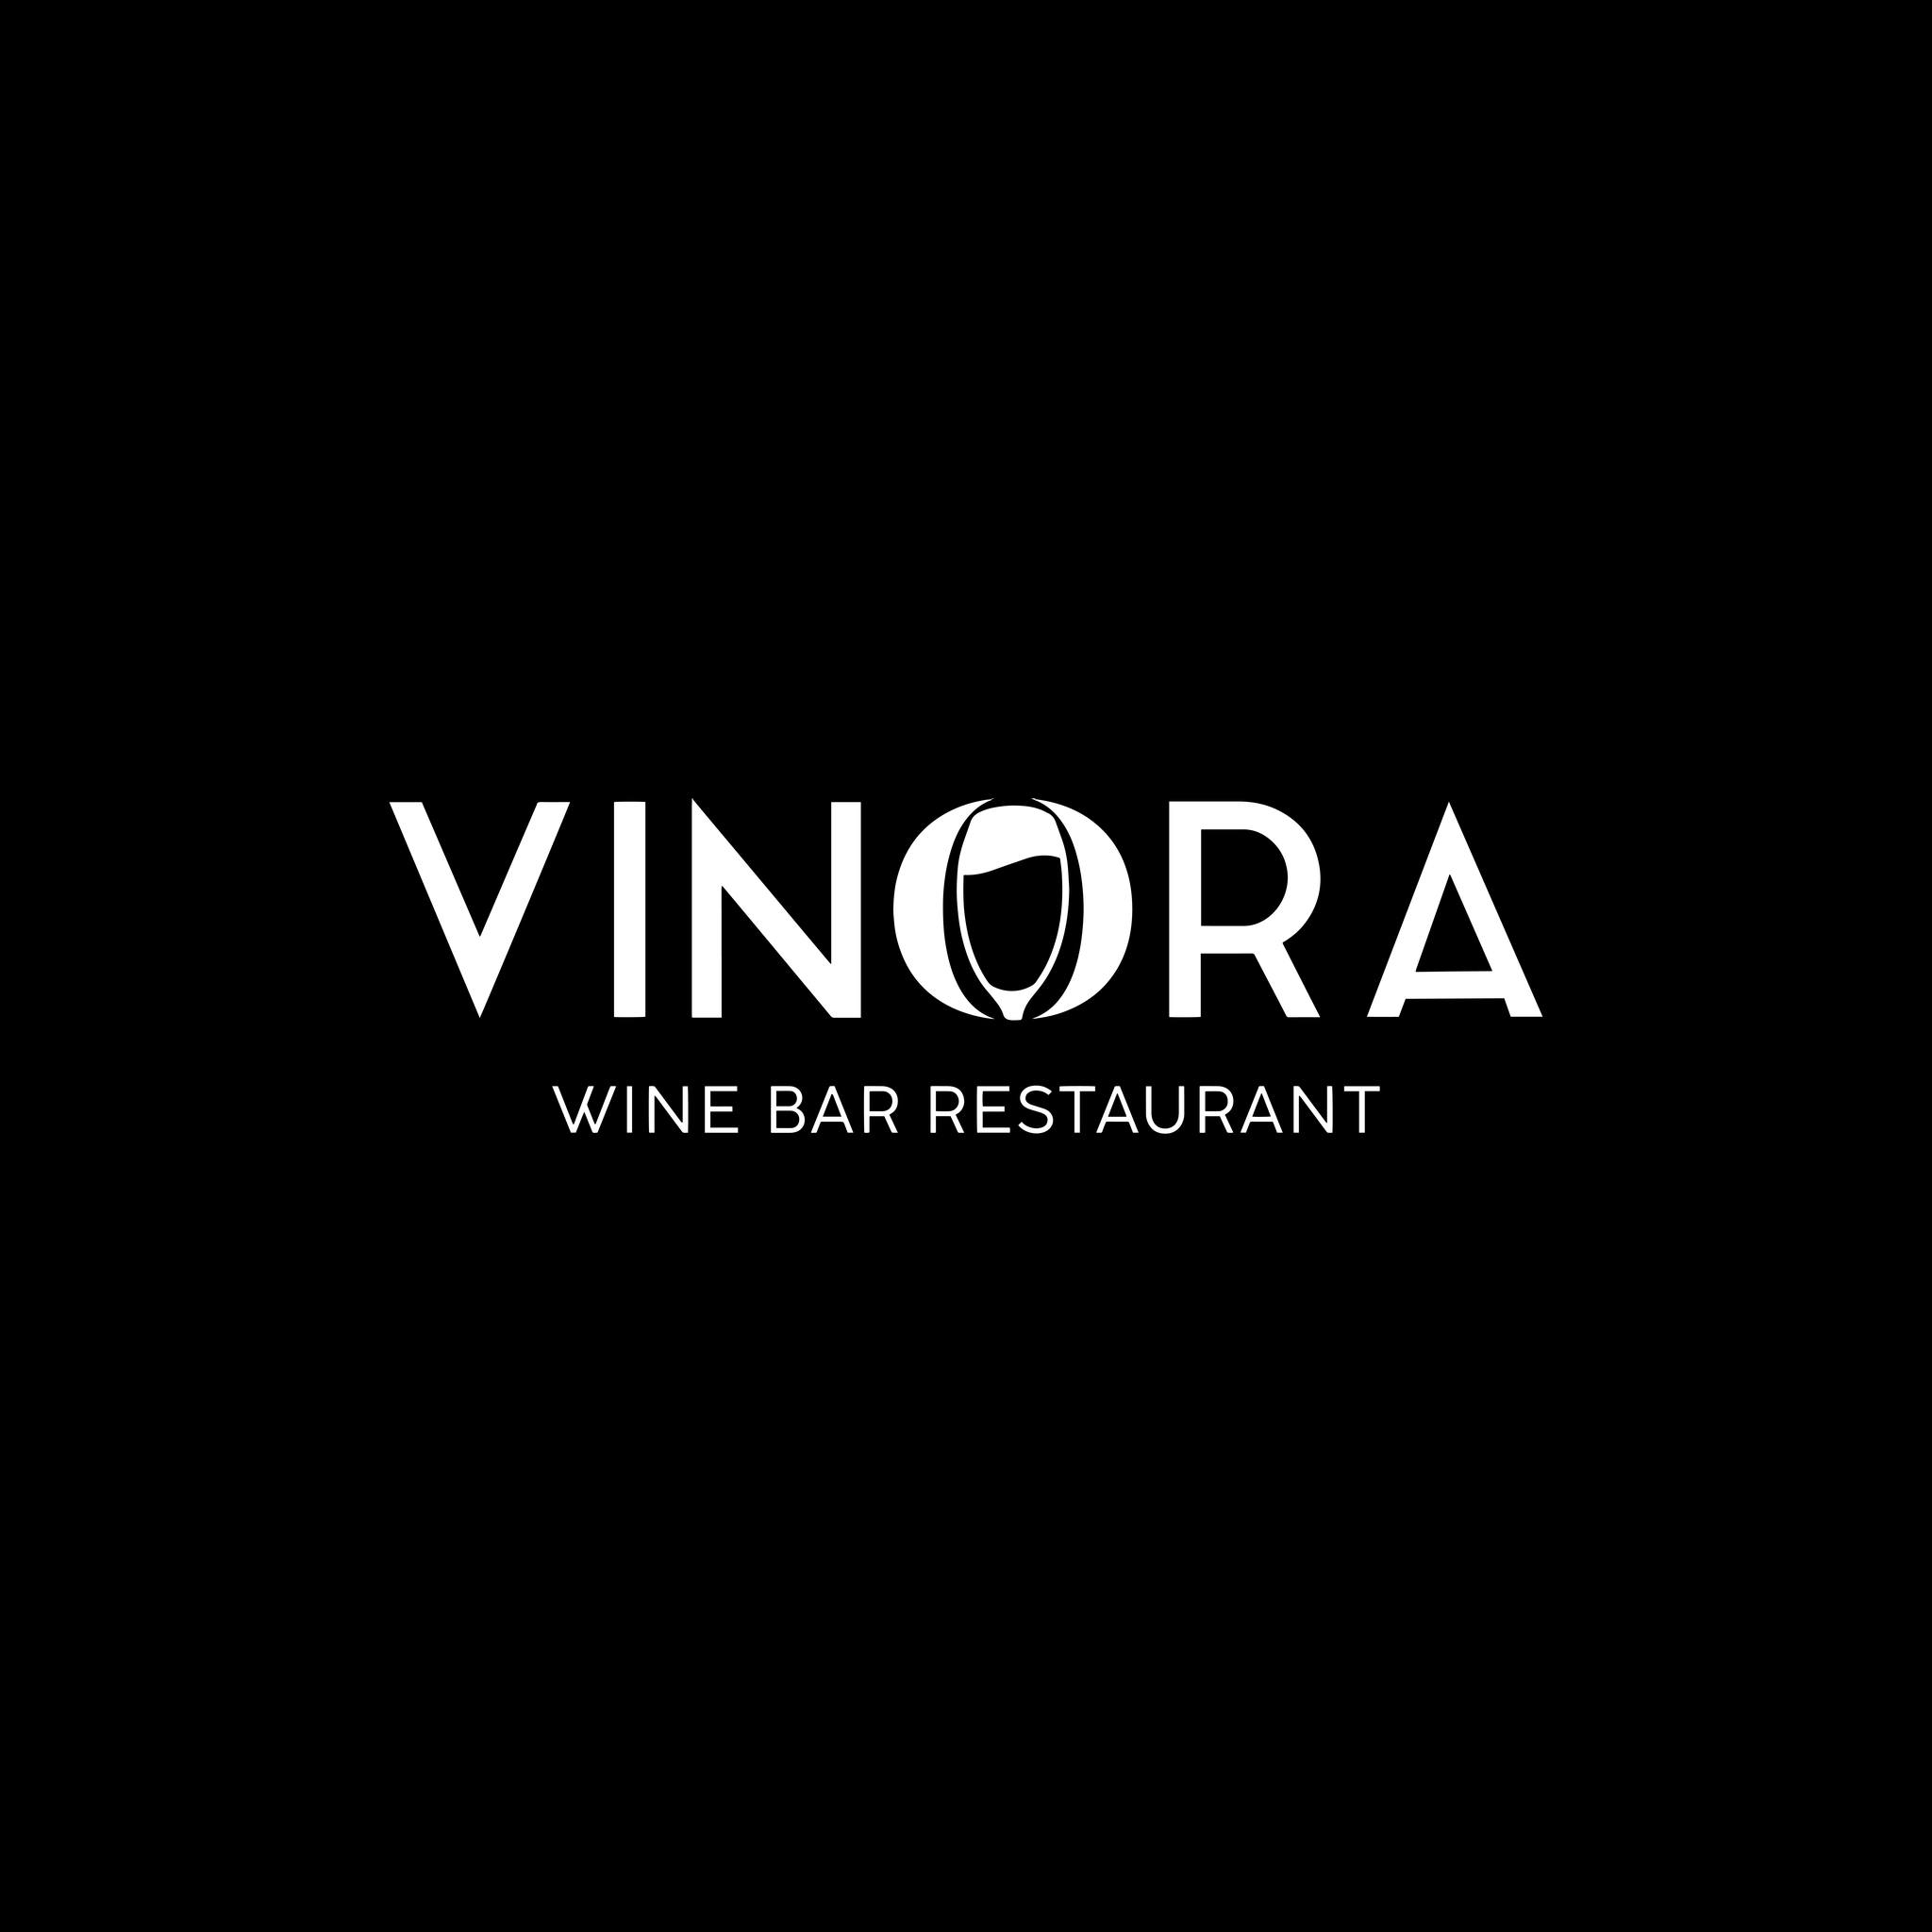 Vinora Wine Bar